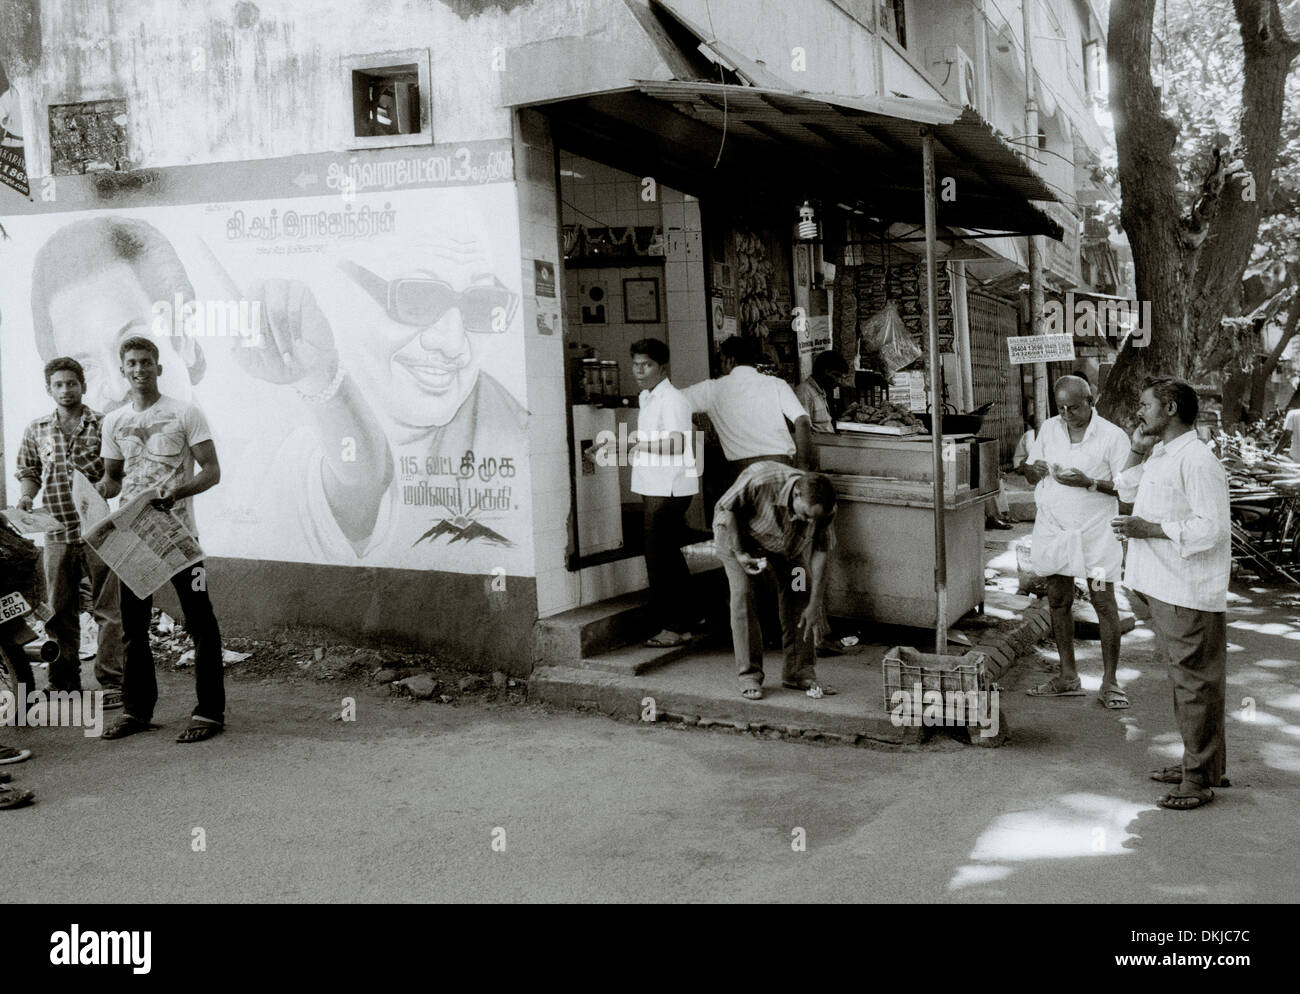 Gemeinschaftsleben auf der Straße in Chennai Madras in Tamil Nadu in Indien in Südasien. Slum Lifestyle Reportage Fotojournalismus Menschen Männer reisen Stockfoto